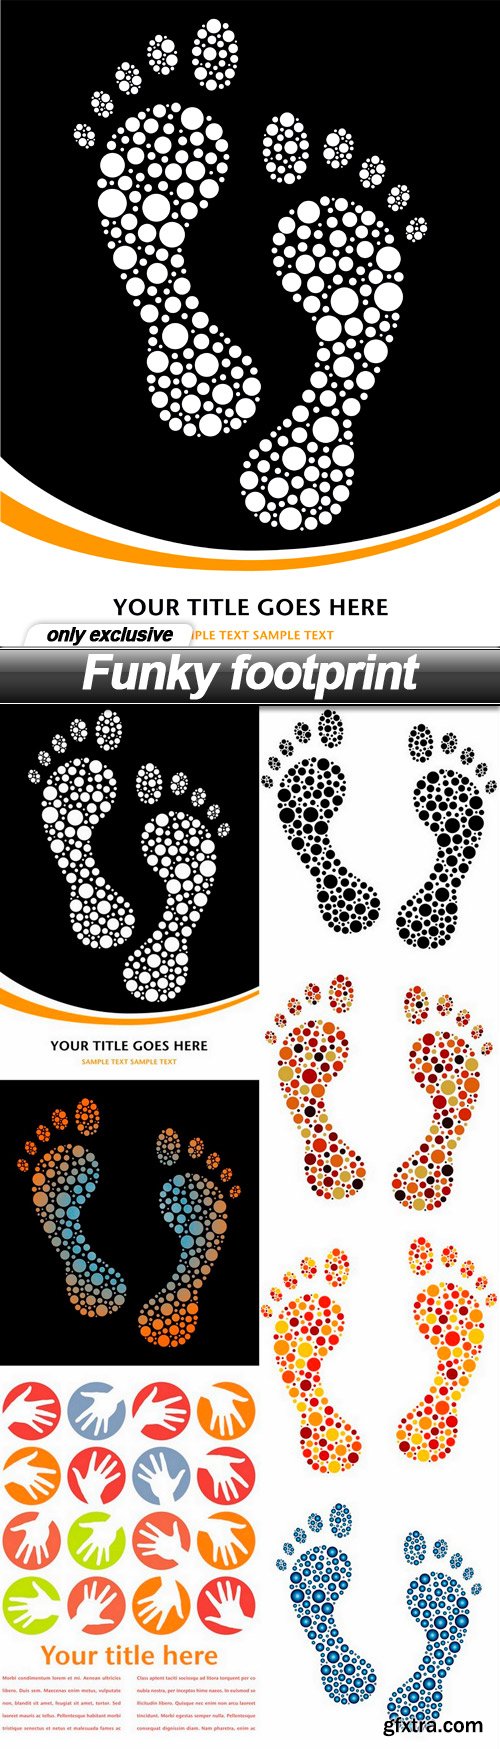 Funky footprint - 7 EPS